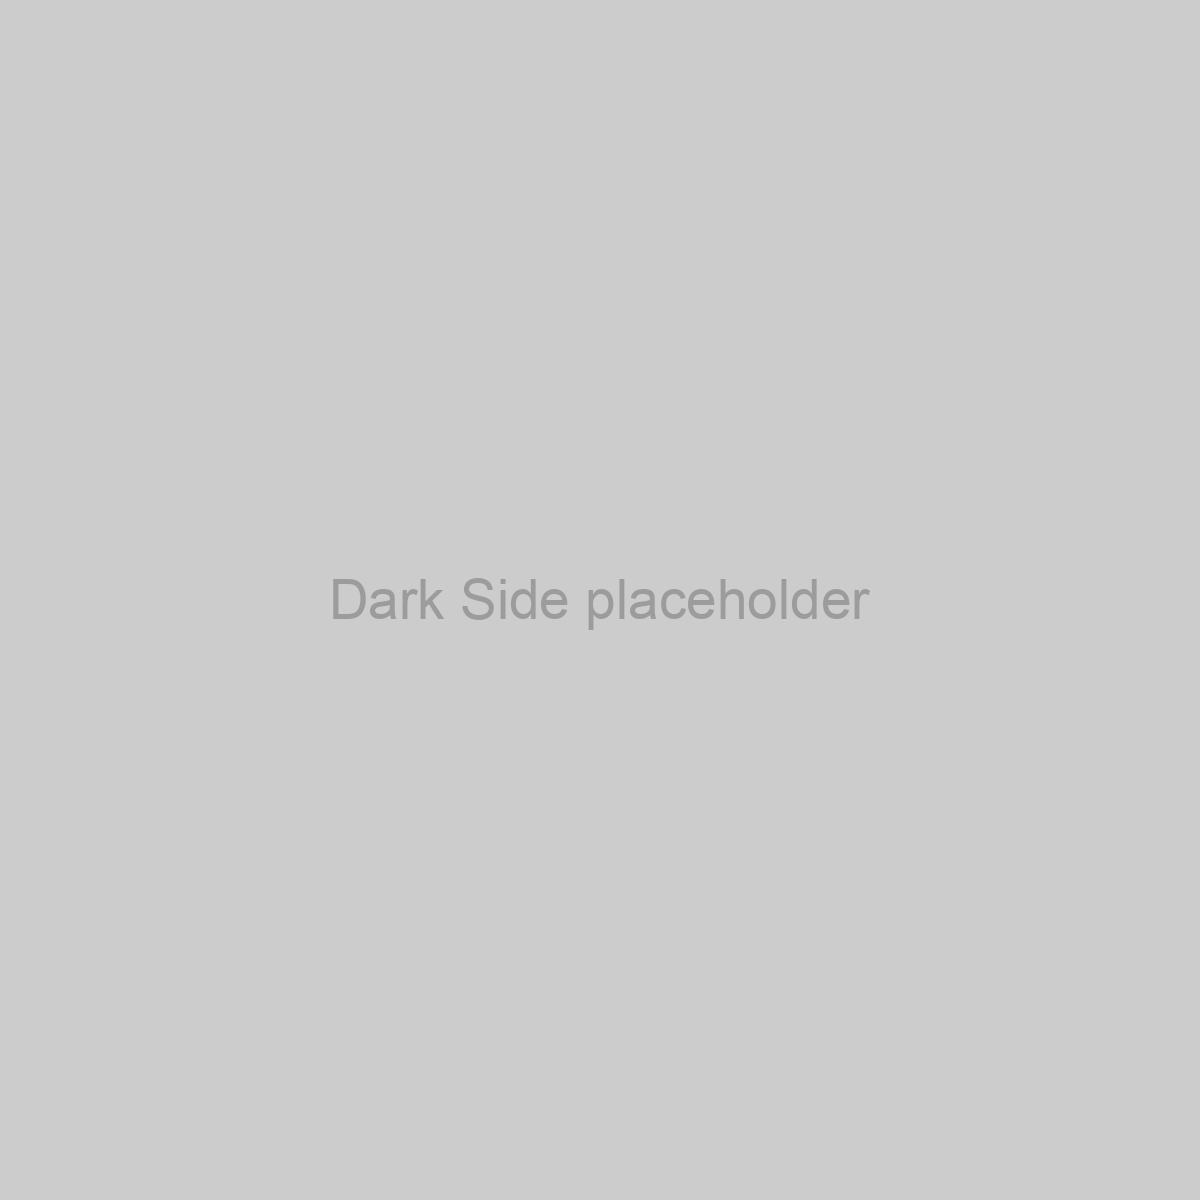 Dark Side Placeholder Image